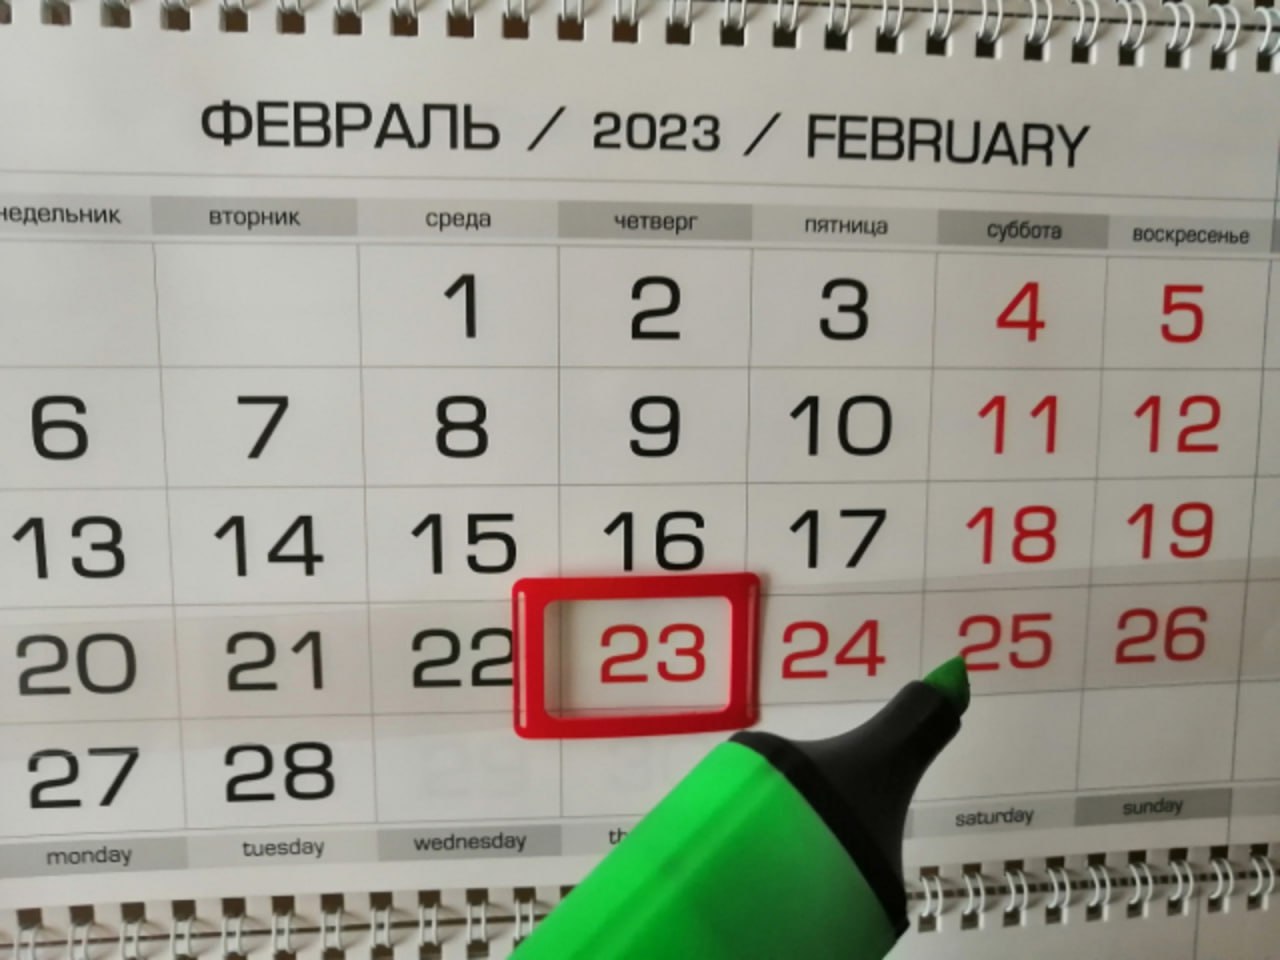 Пятница 23 февраля 2024 программа. DS[jlyst d atdhfkz 2023. Выходные дни в феврале. Выходные дни в прошлом году на 23 февраля. Выходные 2023.